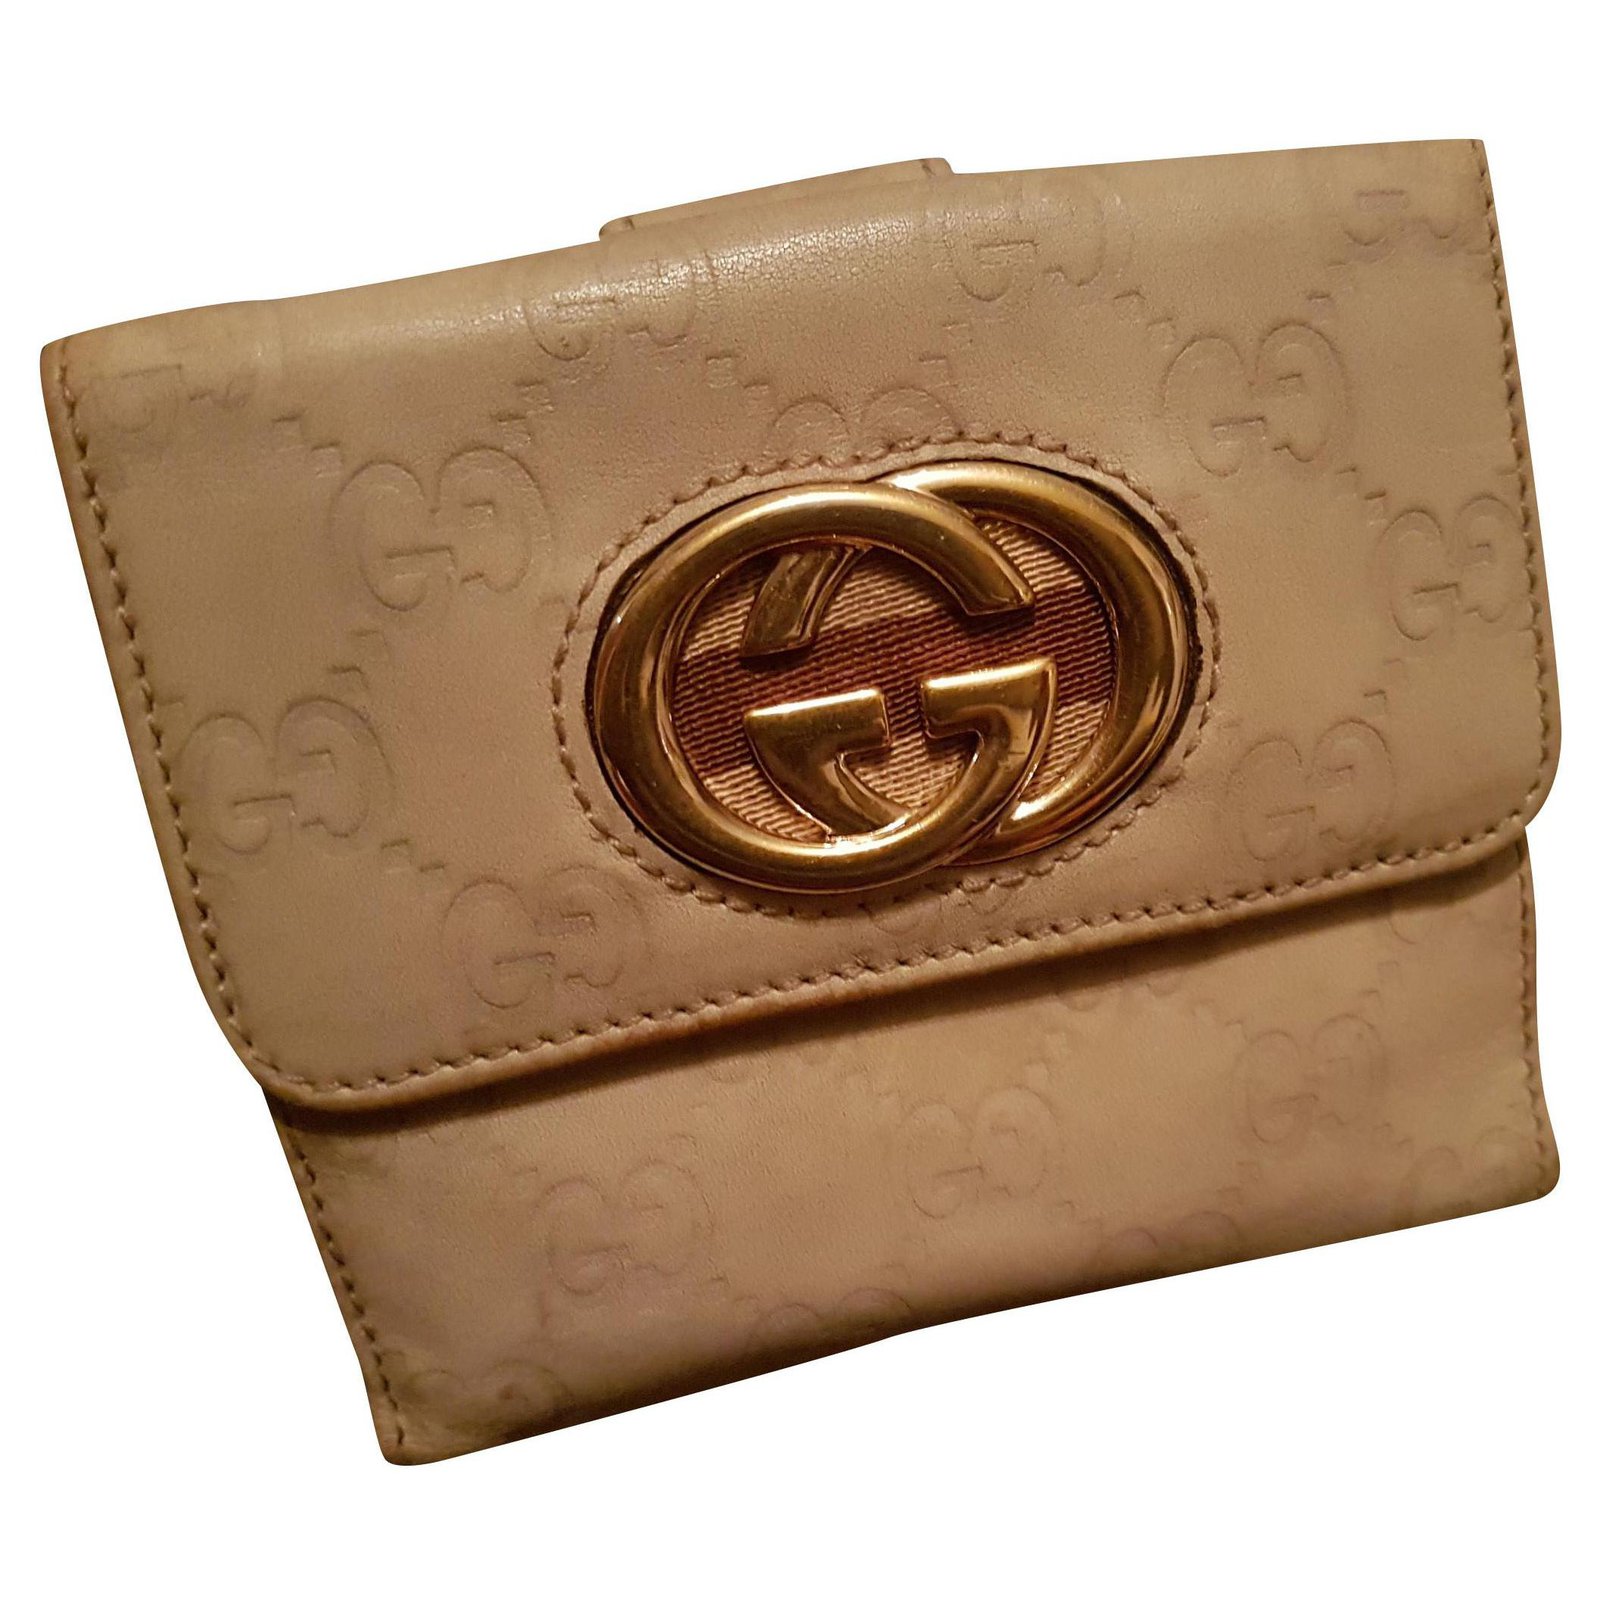 Gucci wallets Wallets Leather Beige ref 